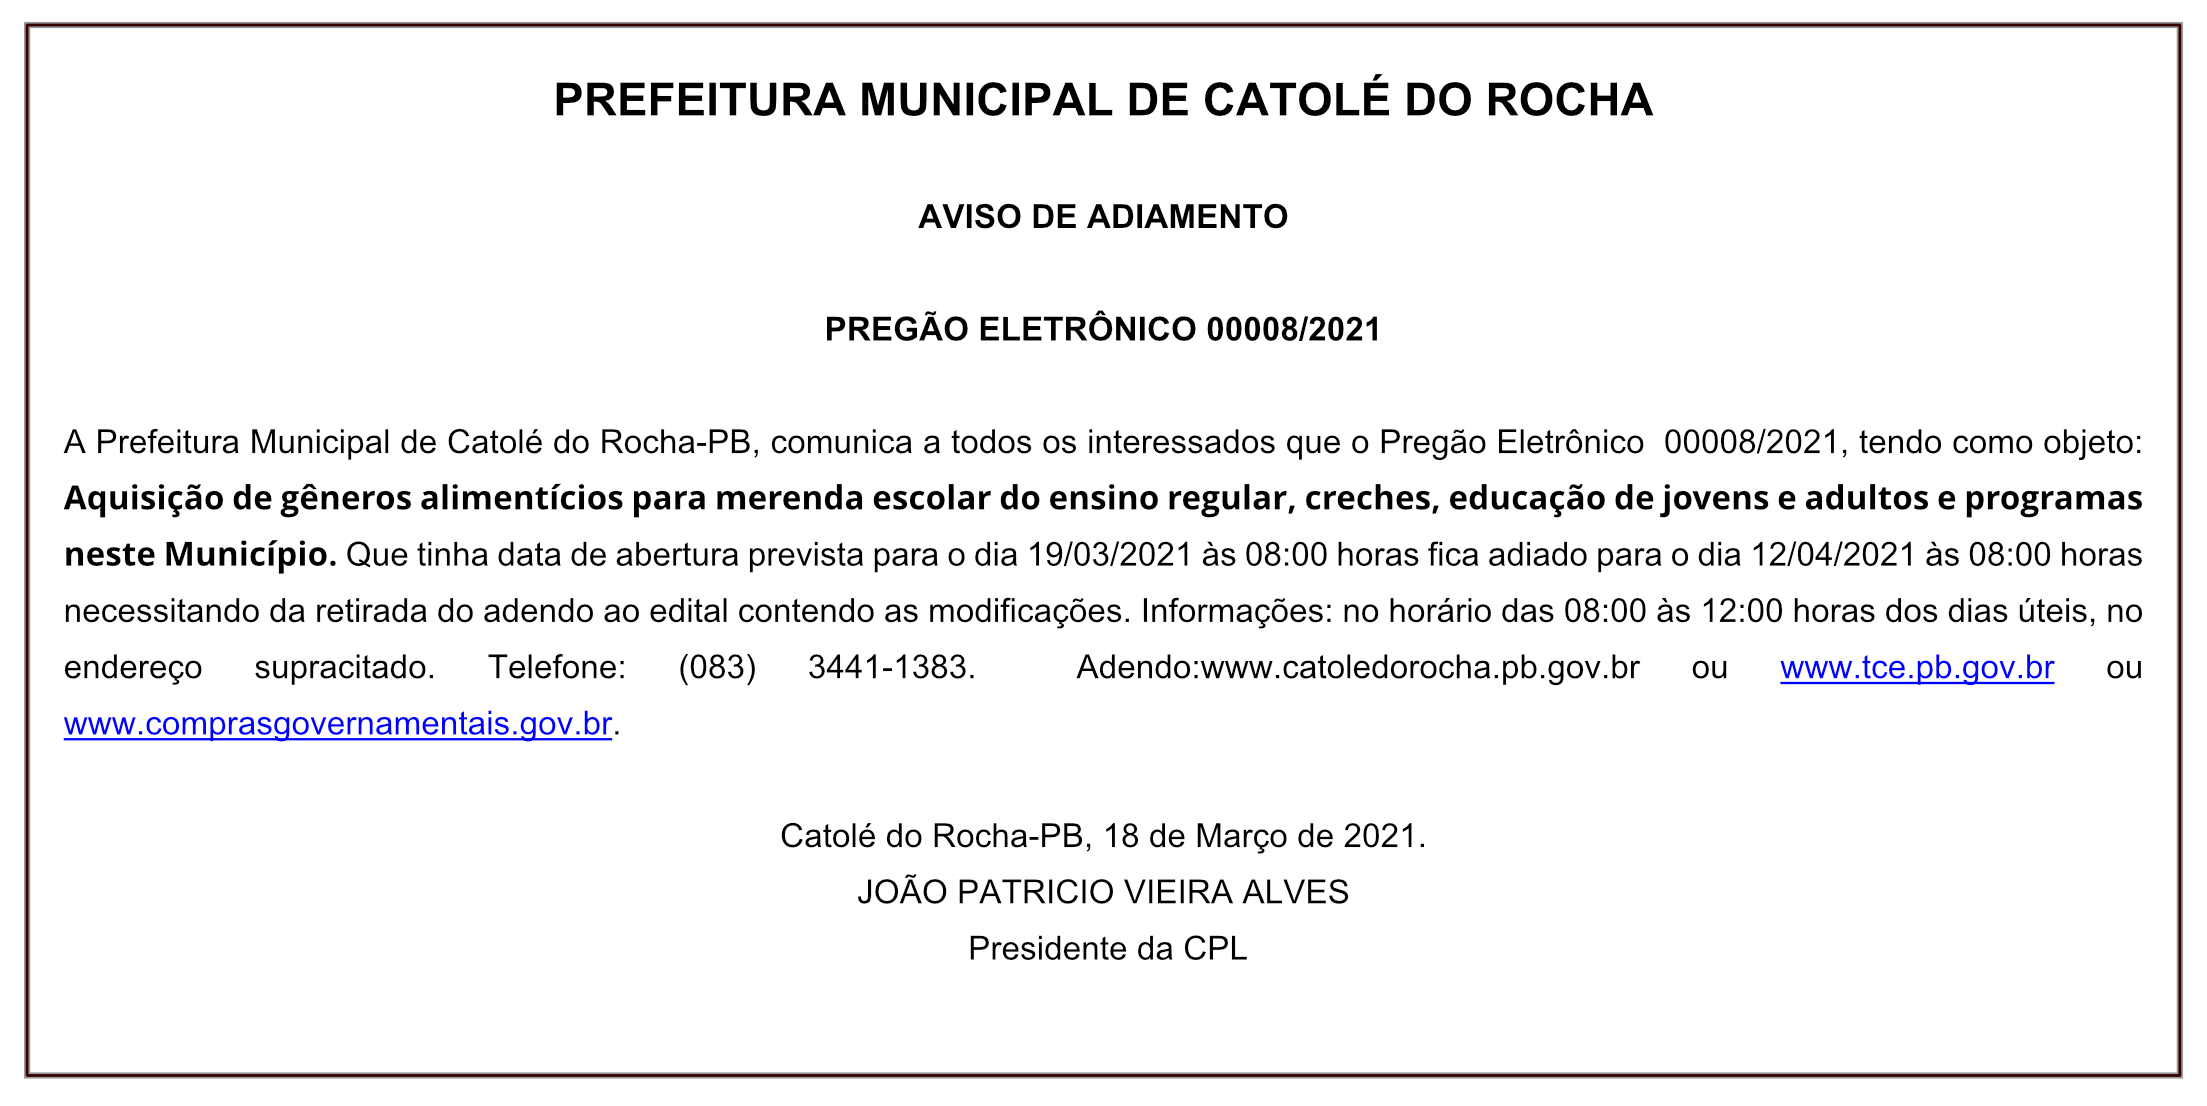 PREFEITURA MUNICIPAL DE CATOLÉ DO ROCHA – AVISO DE ADIAMENTO – PREGÃO ELETRÔNICO 00008/2021